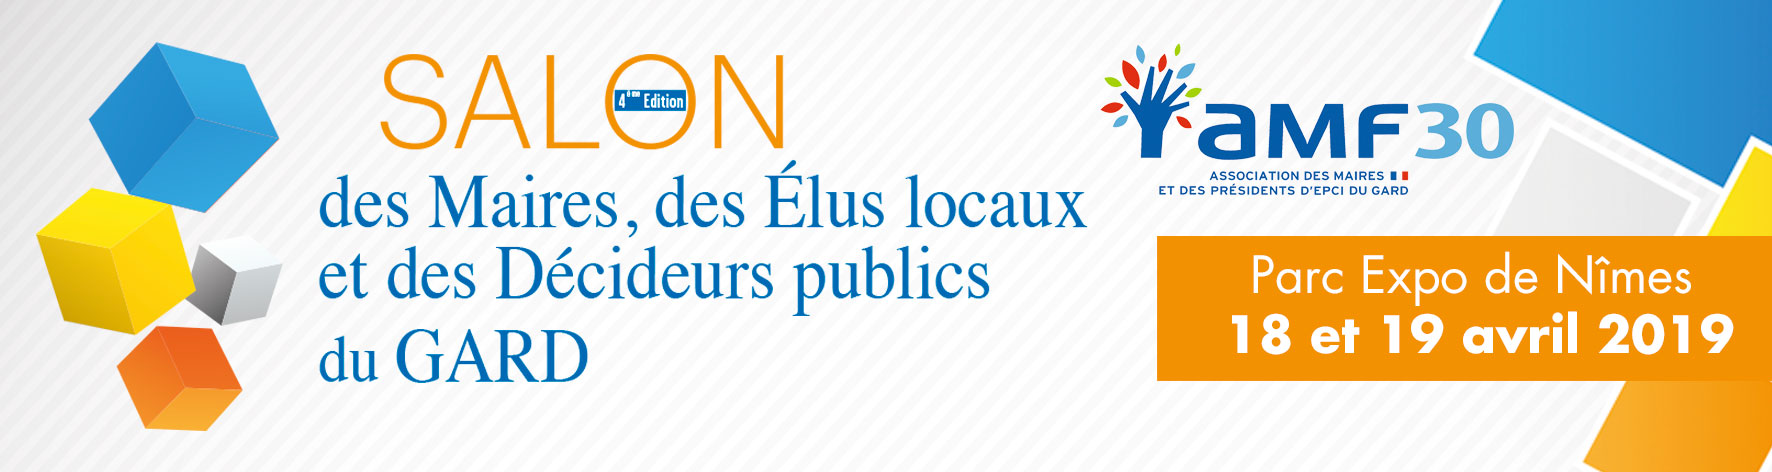 Salon des Maires, des Elus locaux et des Décideurs publics du Gard 2019